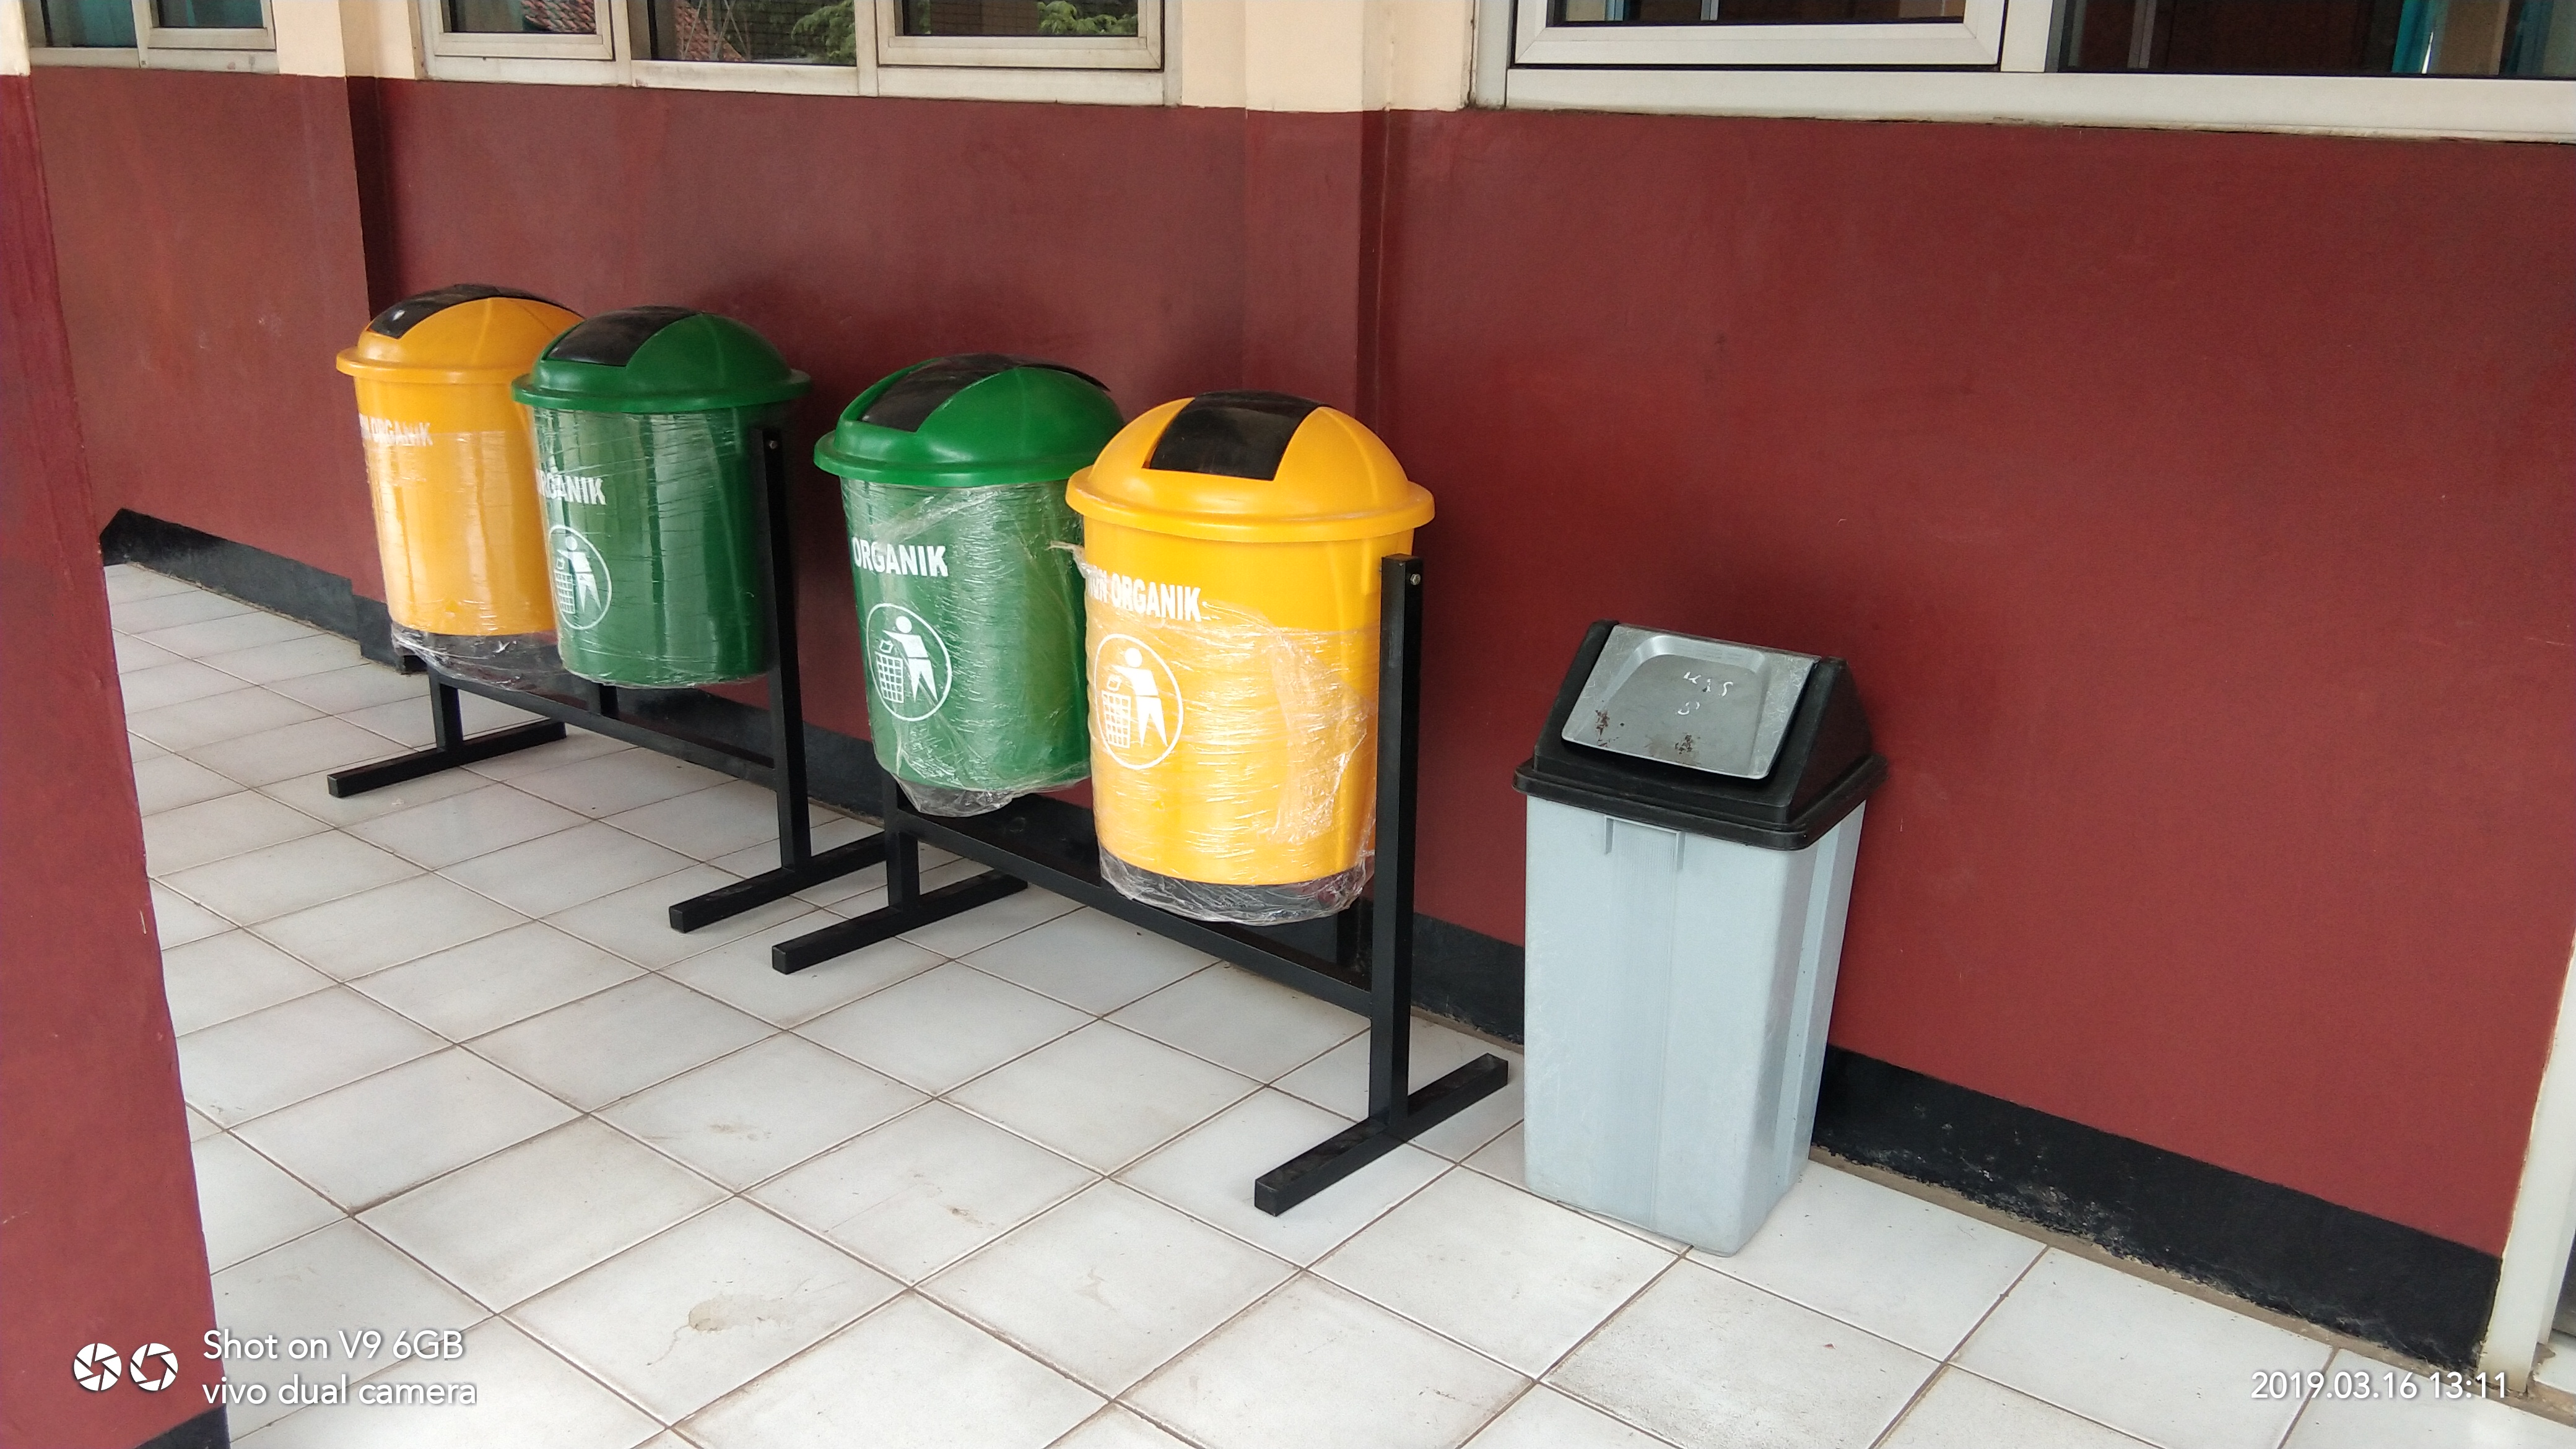  Gambar Tong Sampah  Organik Dan Non Organik Info Terkait 